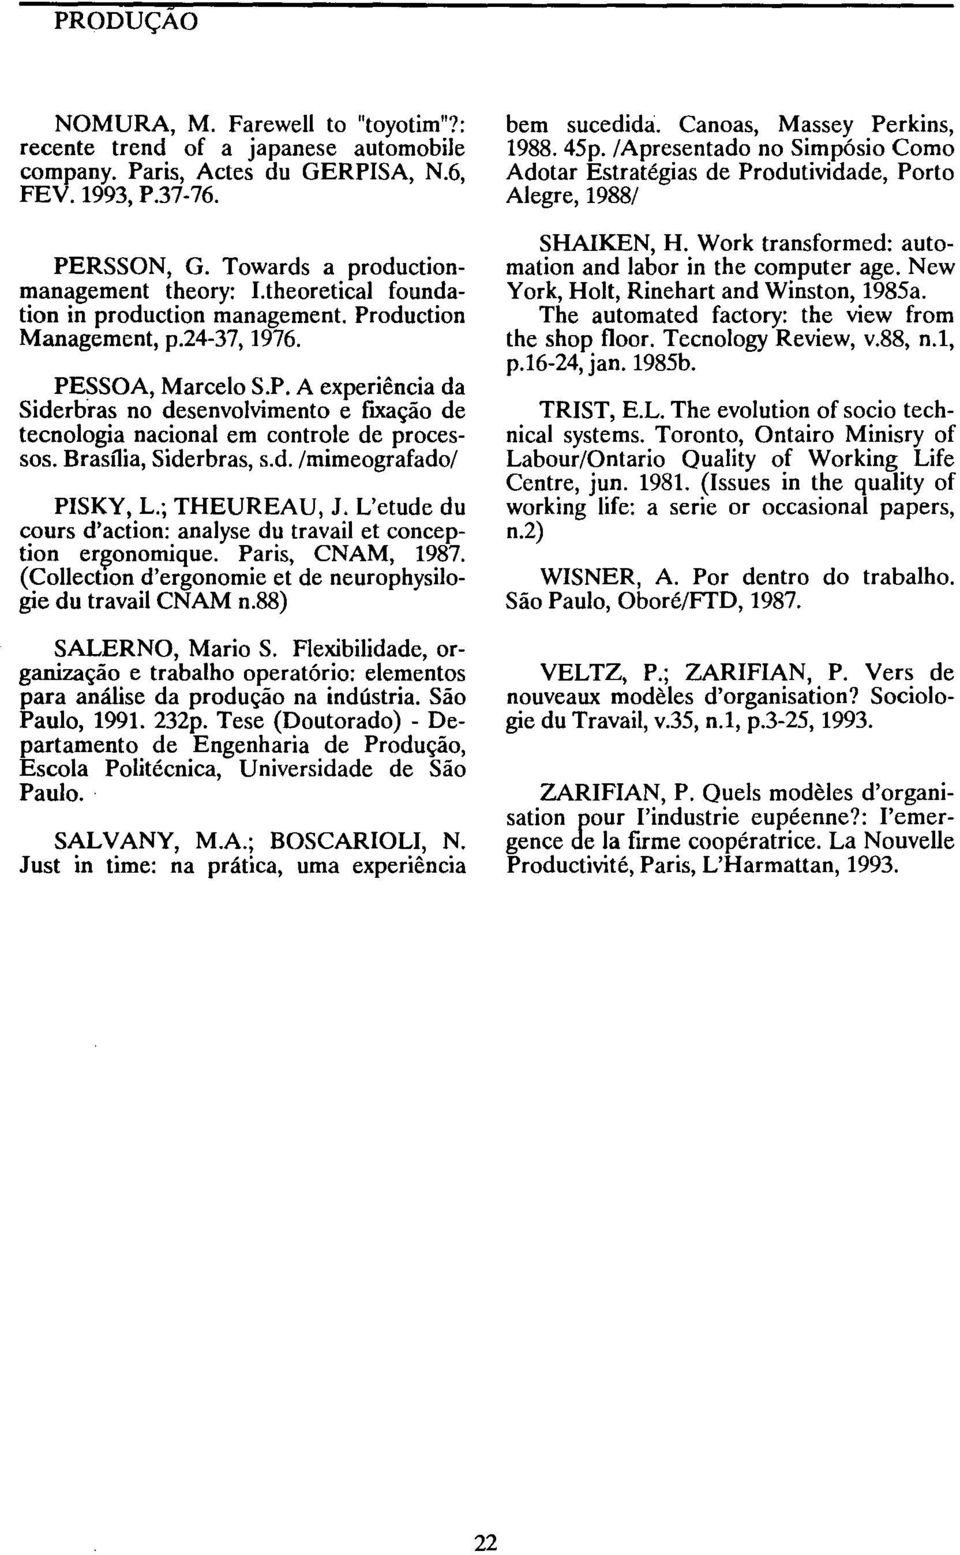 Brasília, Siderbras, s.d. /mimeografado/ PISKY, L.; THEUREAU, J. L'etude du cours d'action: analyse du travail et conception er~onomique. Paris, CNAM, 1987.